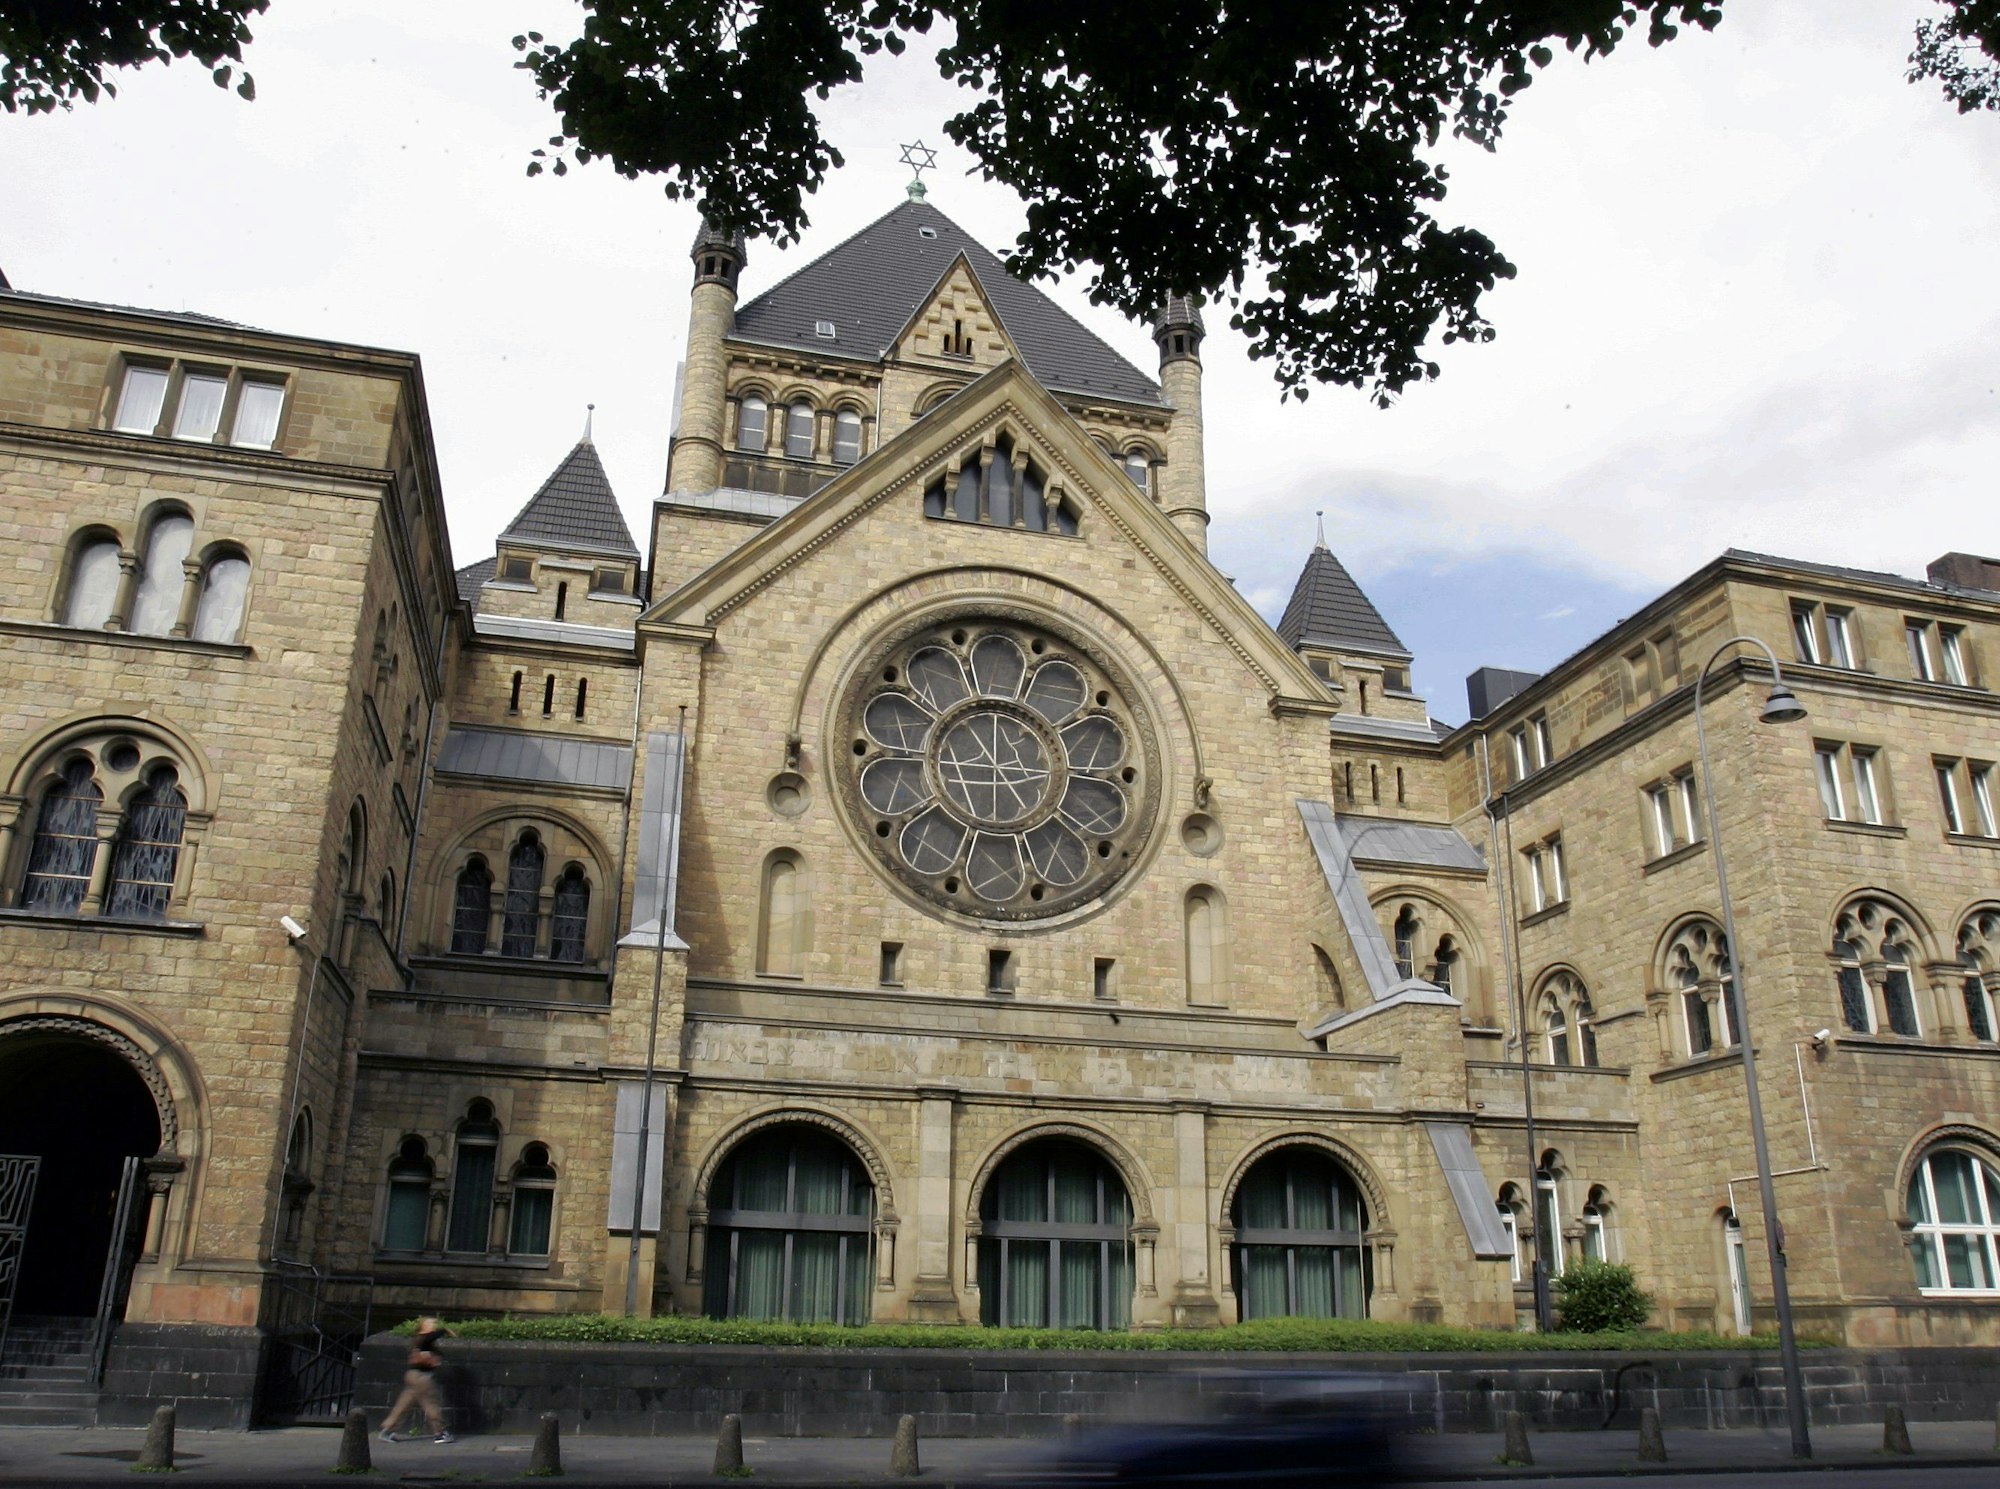 Die Synagoge ist ein prächtiges Gebäude und hat ein rundes Fenster in der Mitte, dass wie eine Blume aussieht.